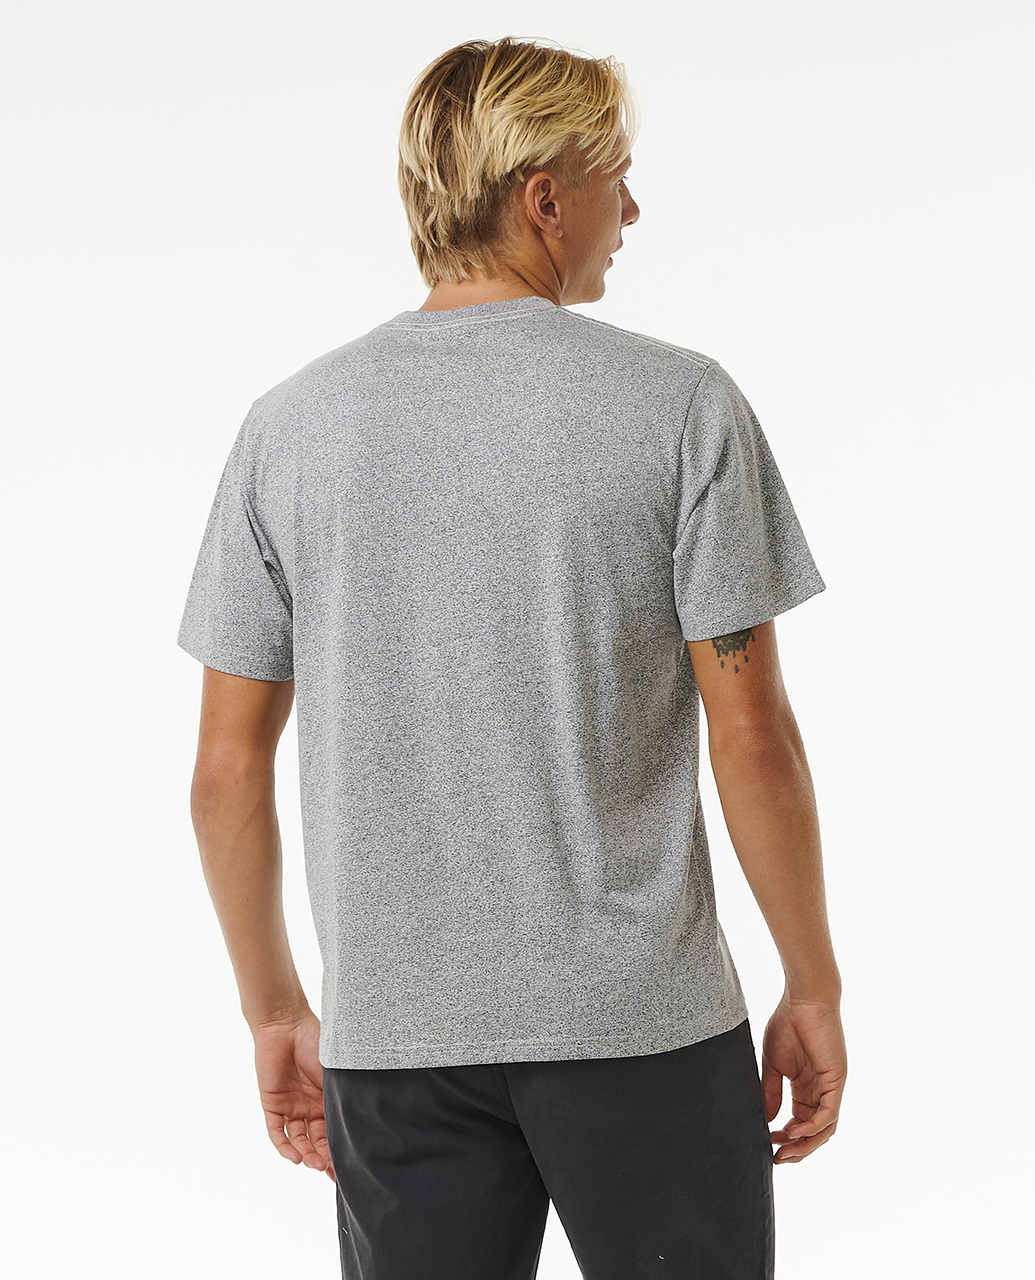 Men's T Shirts & Polos | Surf & Fashion Clothing | Ozmosis